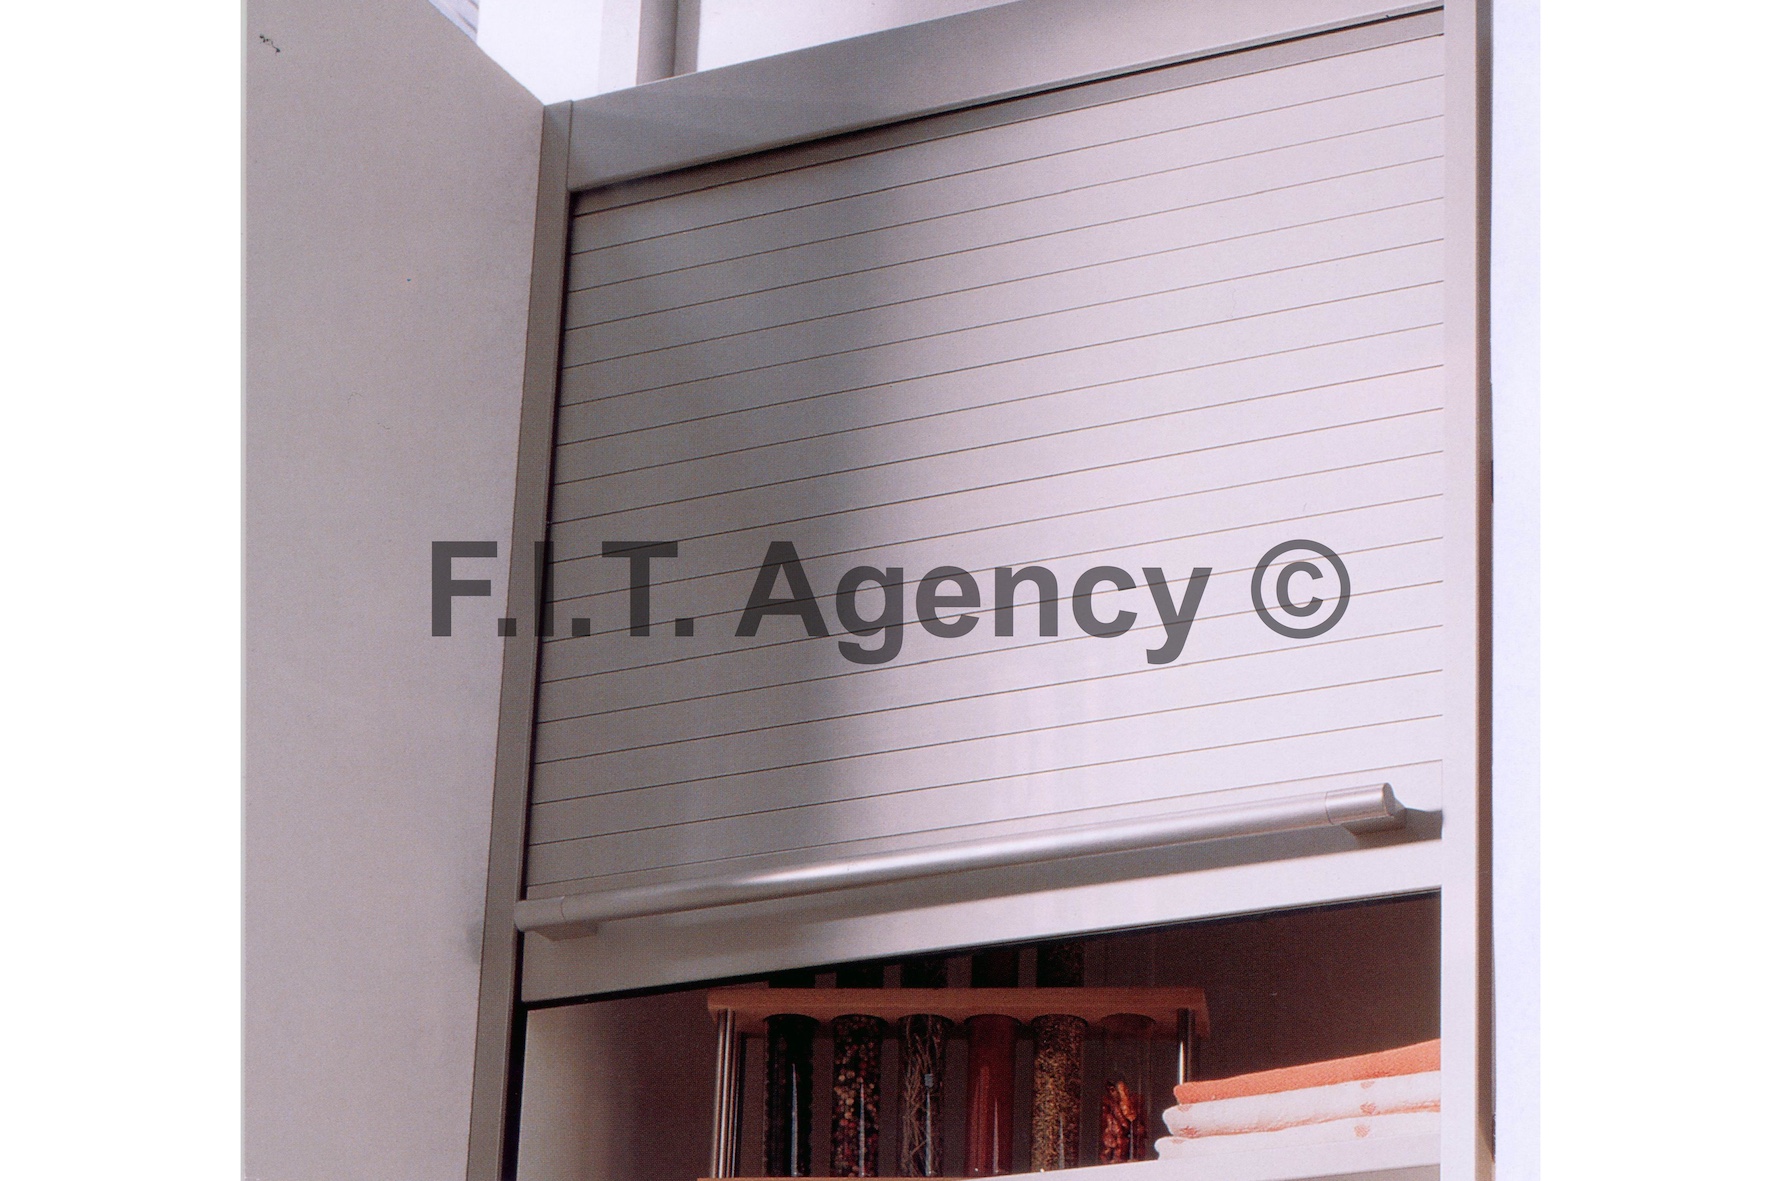 Antirutschmatten – F.I.T. Agency